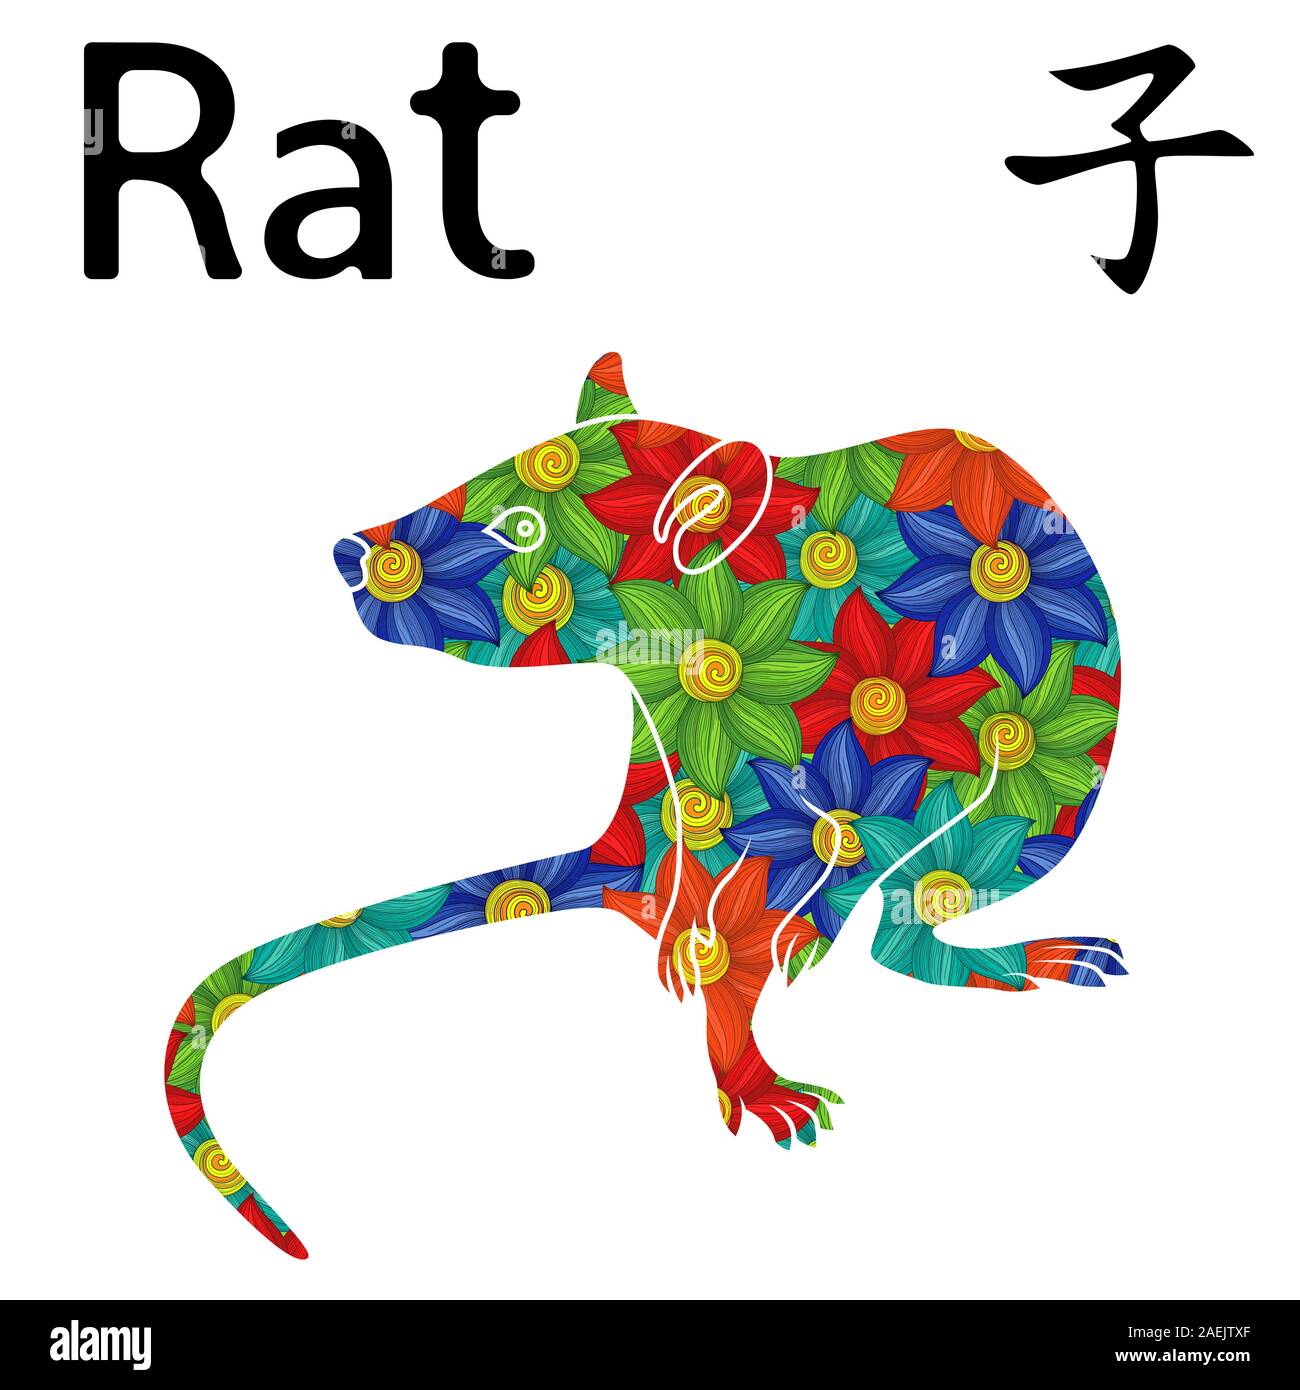 Chinesisches Zeichen Ratte, Symbol für das Neue Jahr auf dem Östlichen Kalender, Hand gezeichnet Vektor Schablone mit bunten Blumen auf weißem Hintergrund Stock Vektor